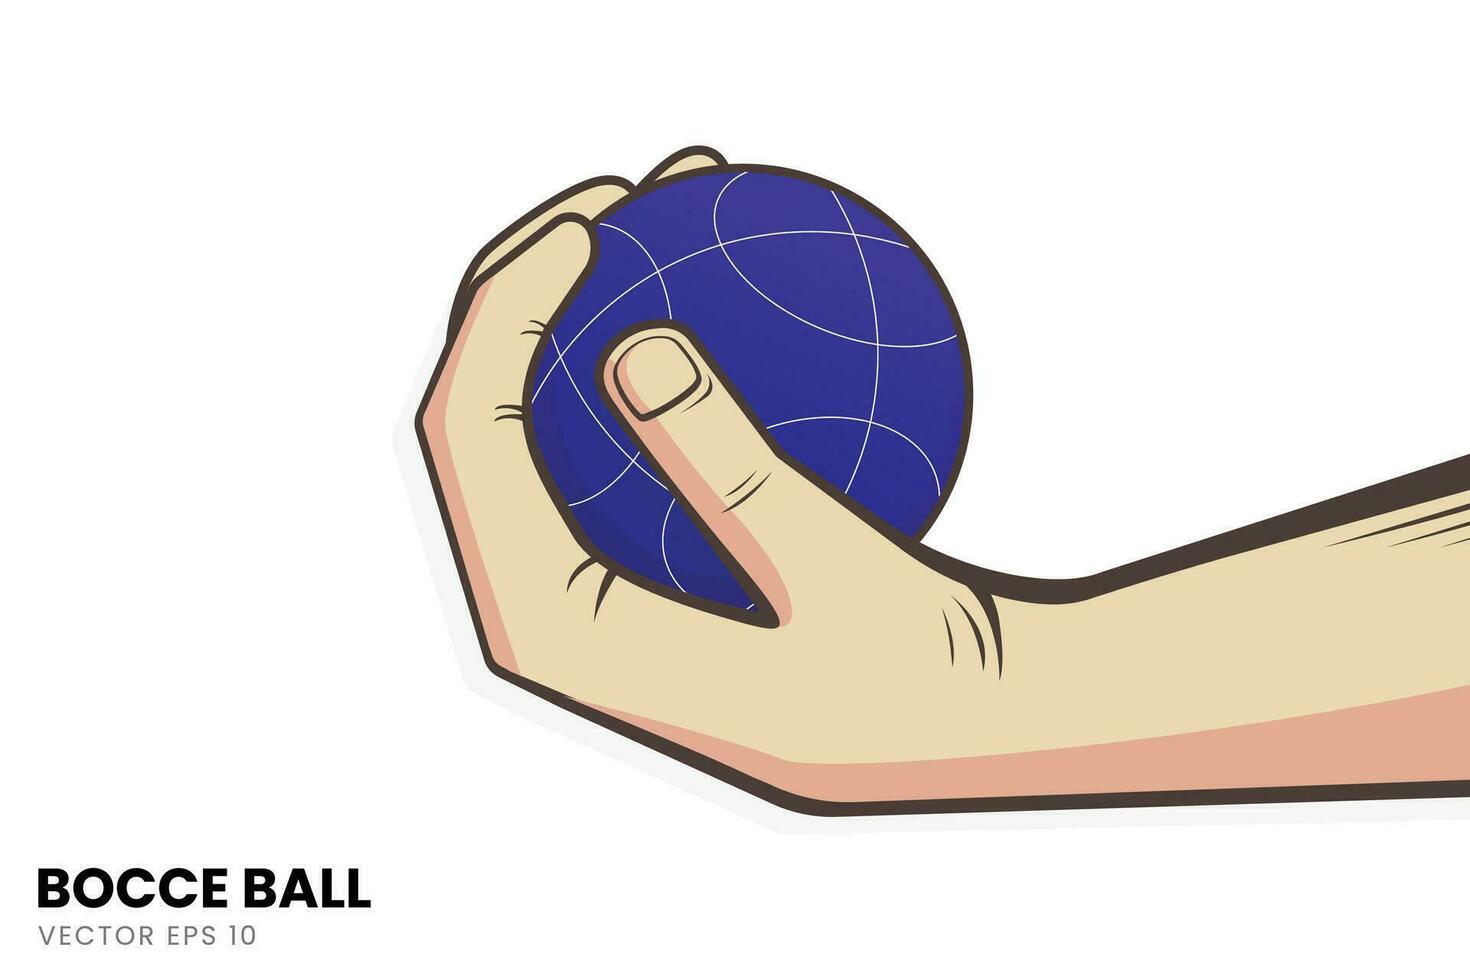 illustratie van de techniek van aangrijpend de jeu de boules bal. perfect voor toegevoegd afbeeldingen met een jeu de boules sport- thema. vector